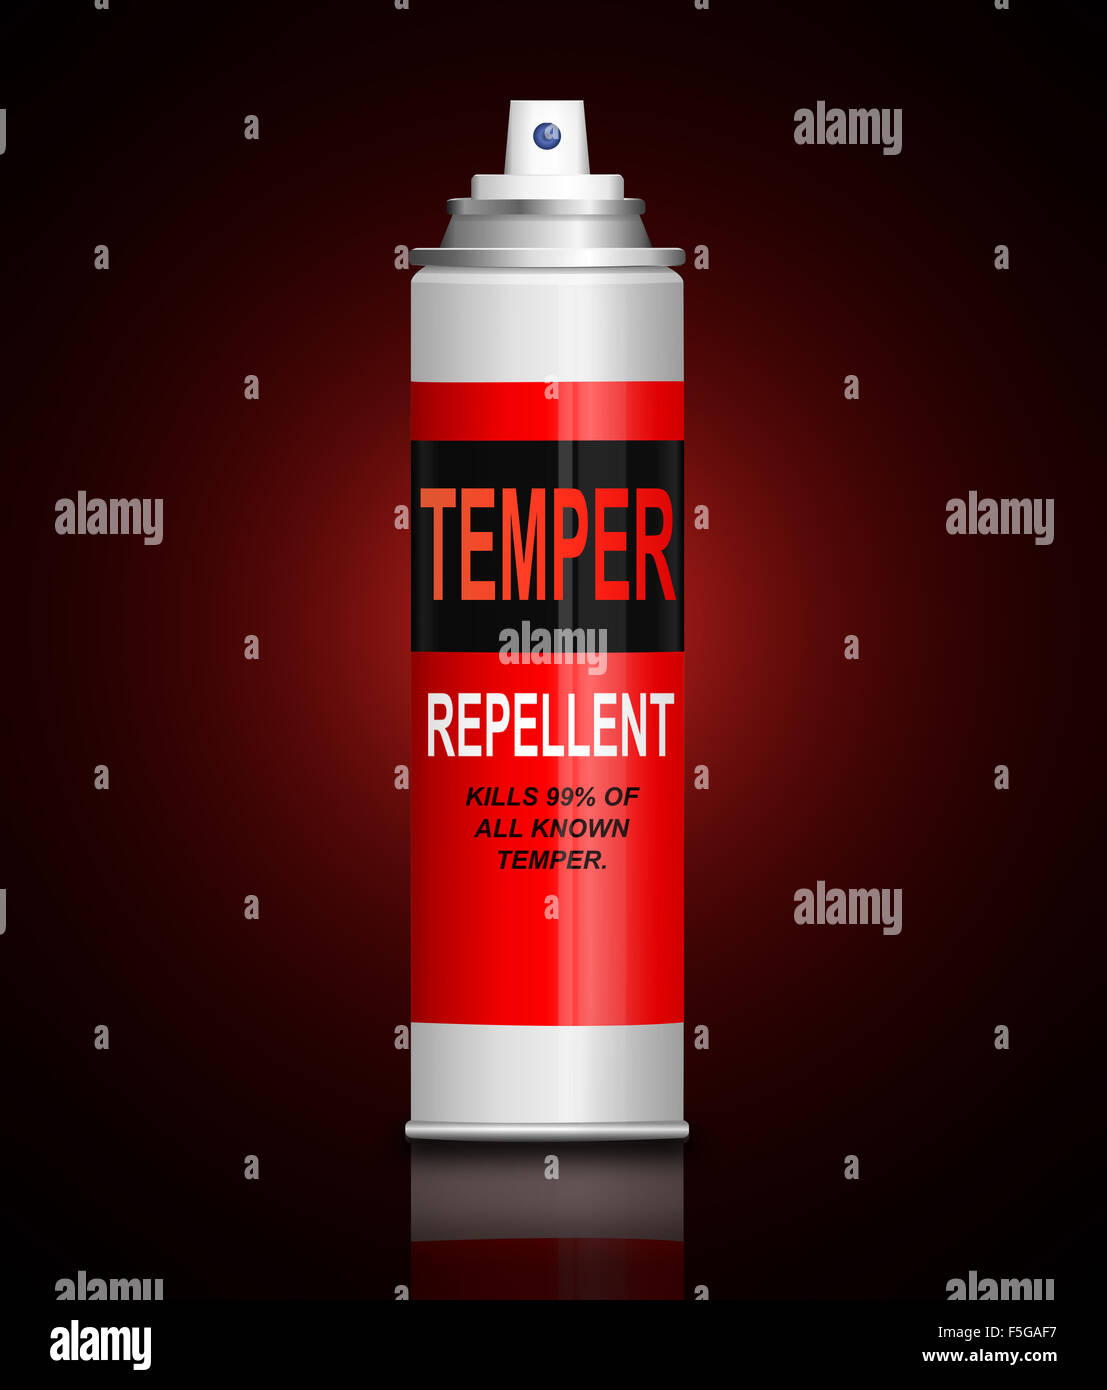 Temper remover concept. Stock Photo